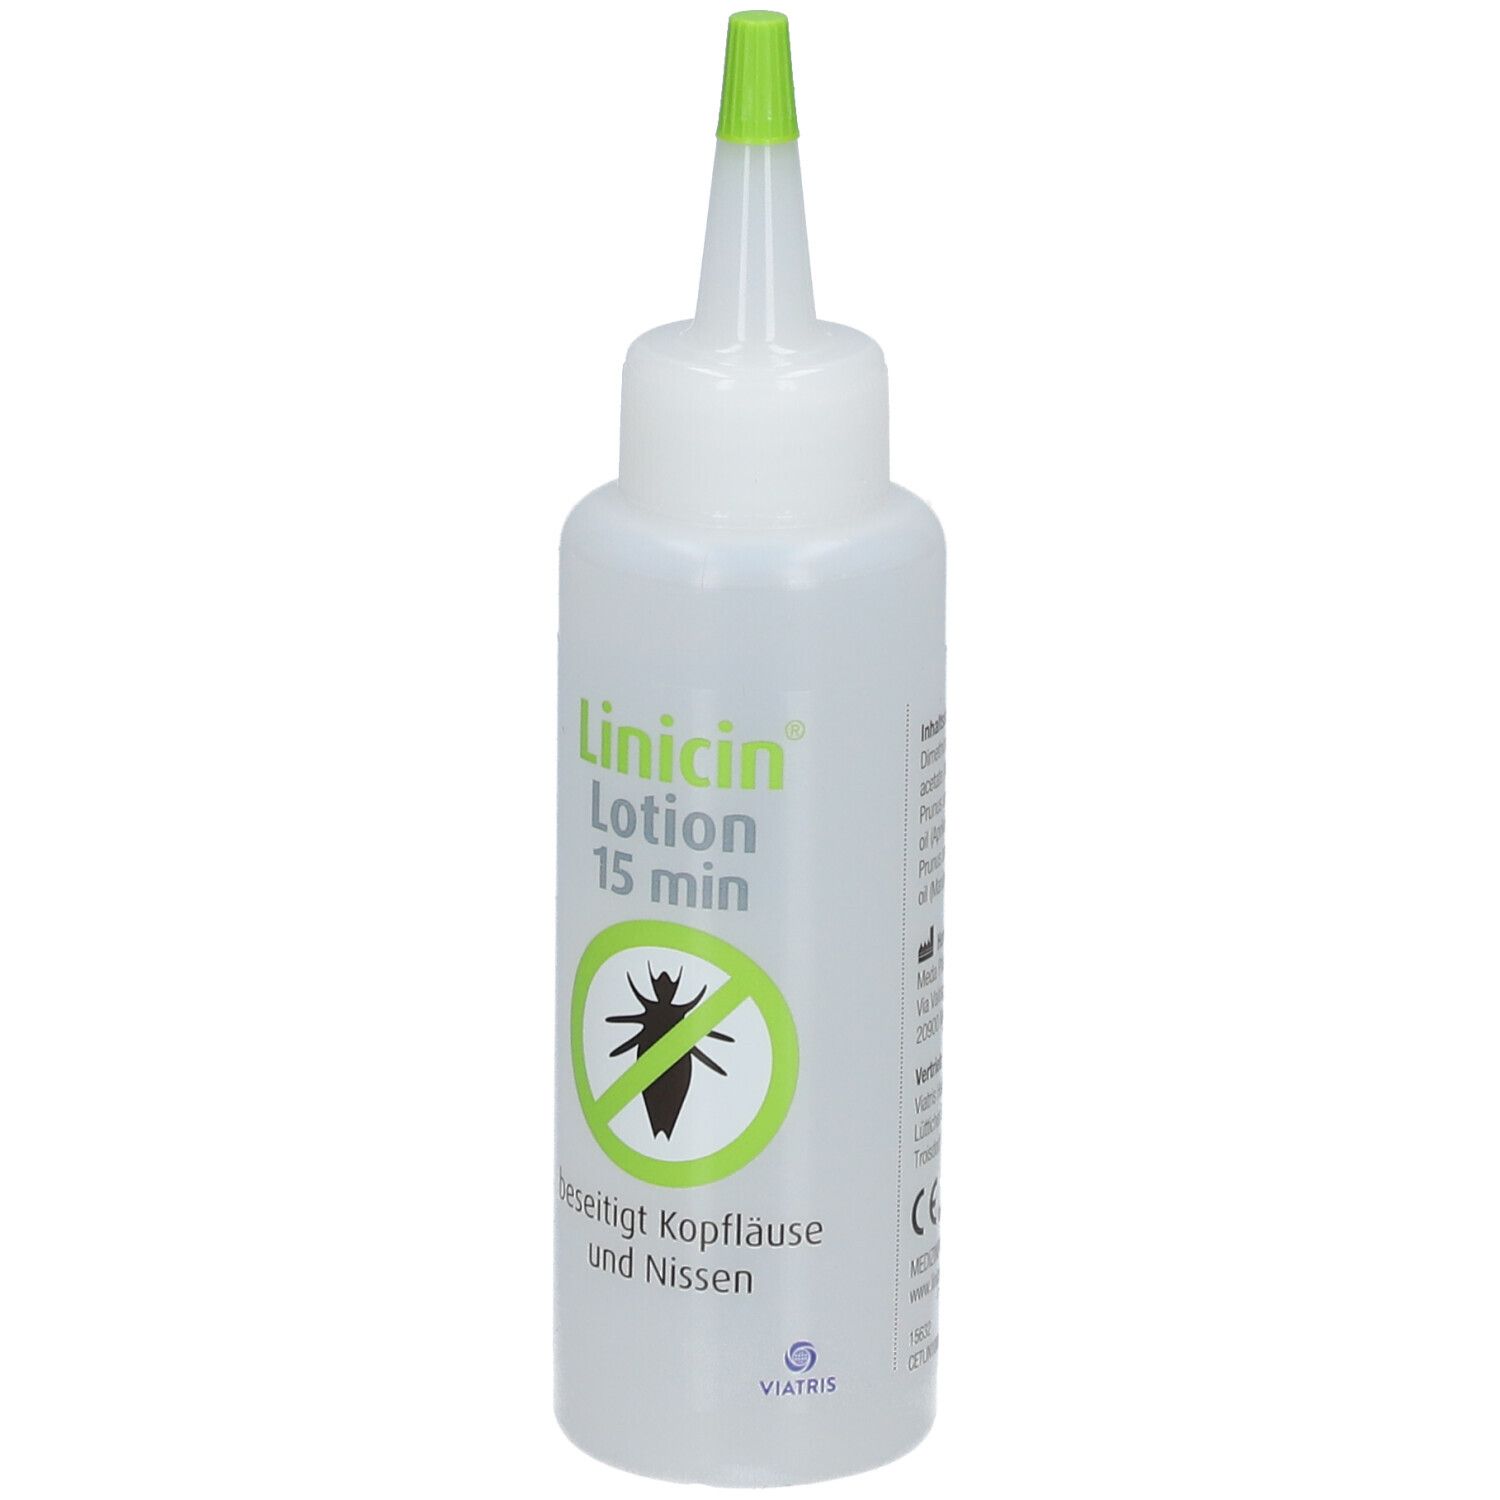 Linicin Lotion (100 ml) - Läusemittel zur Behandlung von Kopfläusen